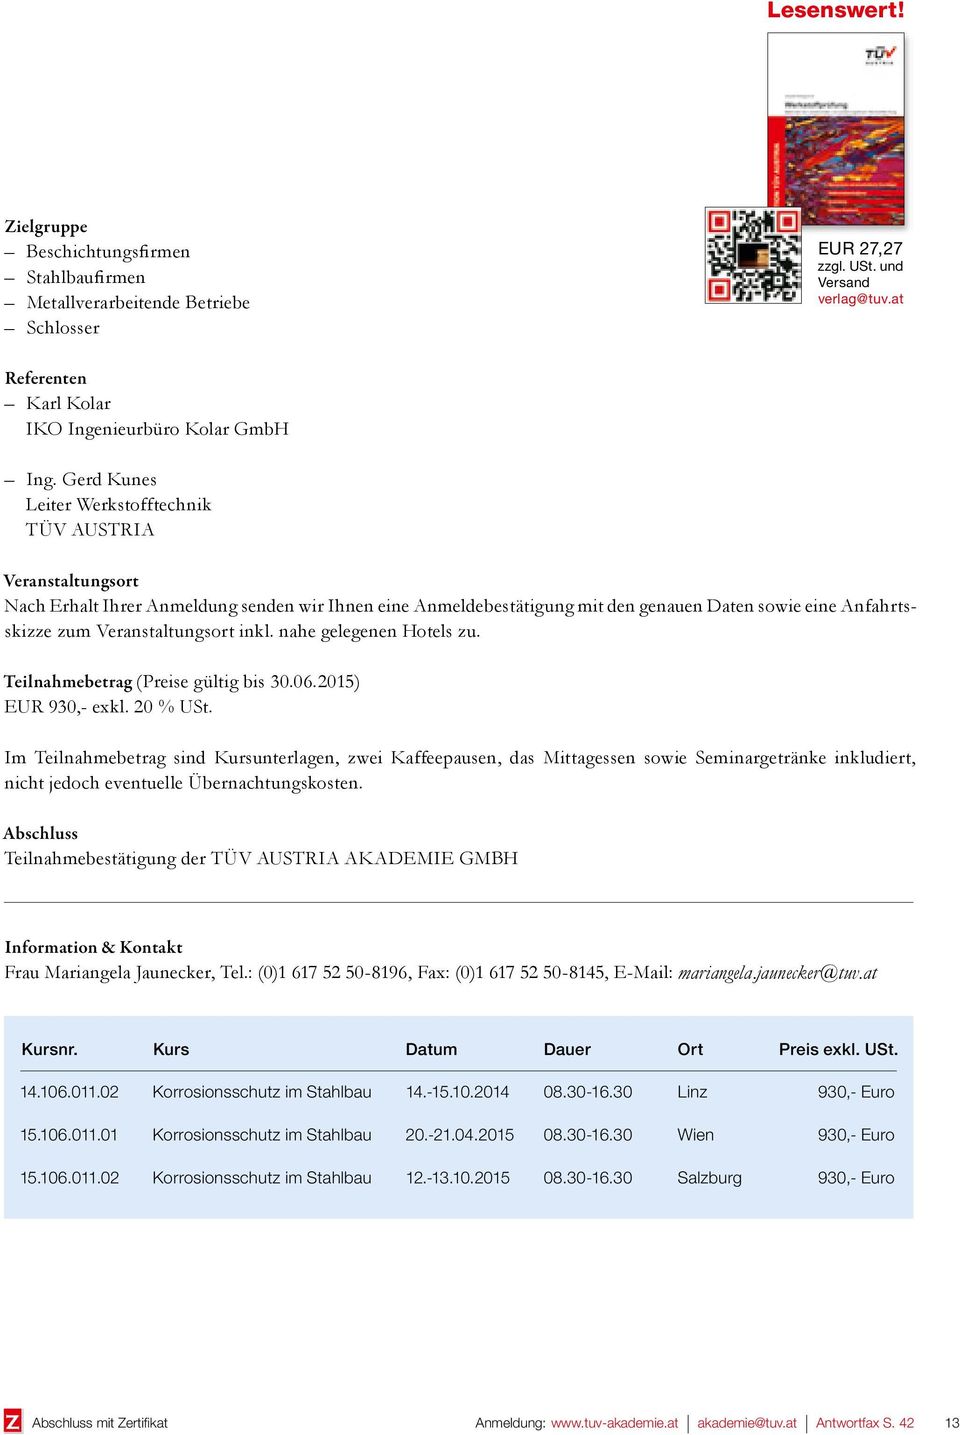 Veranstaltungsort inkl. nahe gelegenen Hotels zu. Teilnahmebetrag (Preise gültig bis 30.06.2015) EUR 930,- exkl. 20 % USt.